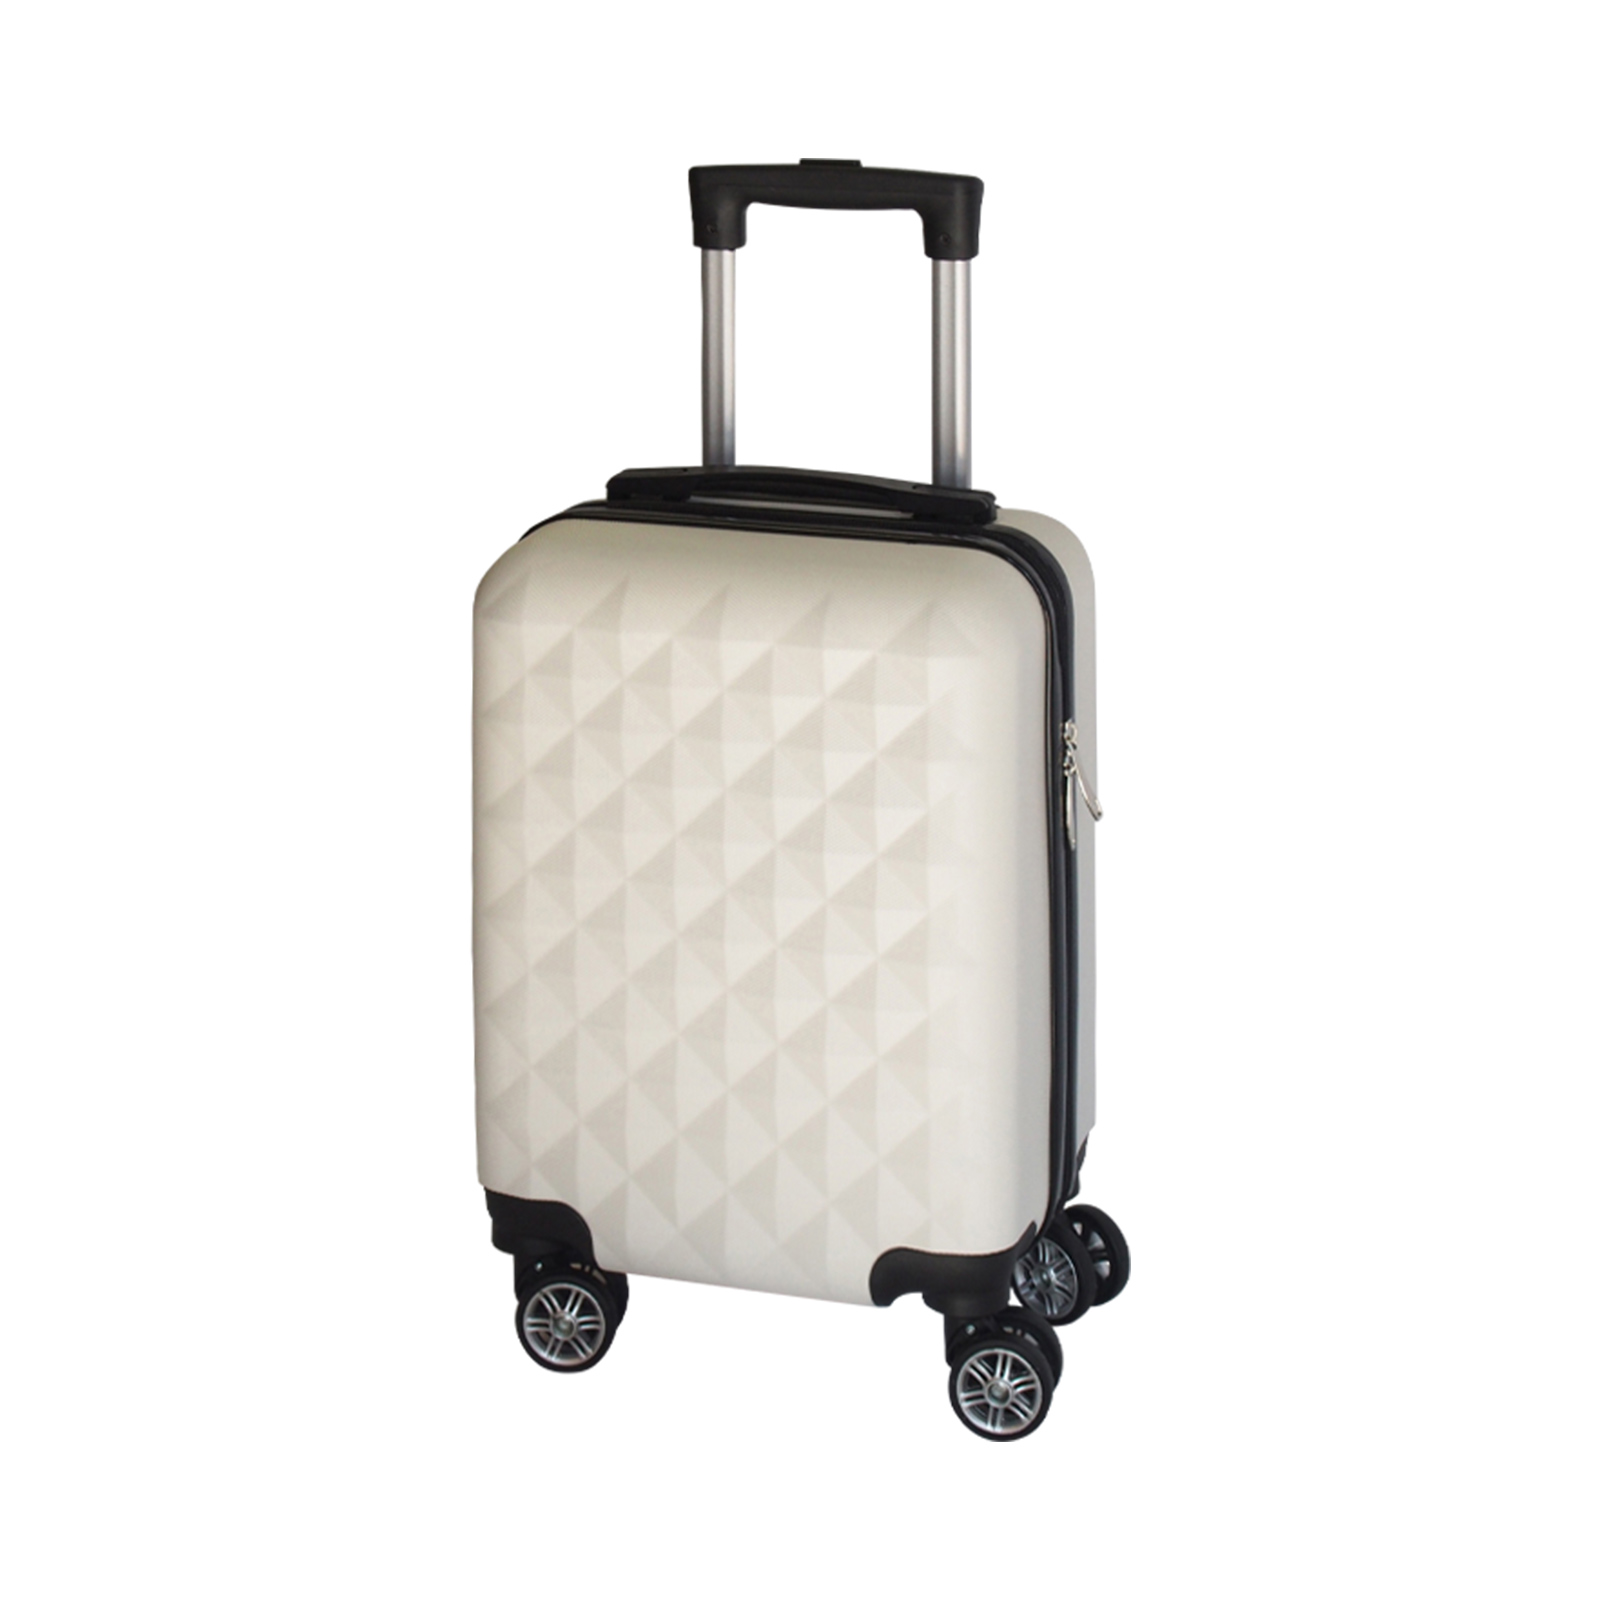 キャリーケース ssサイズ スーツケース 機内持ち込み 容量21L コインロッカー サイズ SS かわいい 可愛い キャリーバッグ TSAロック  プリズム 軽量 重さ約2.1kg